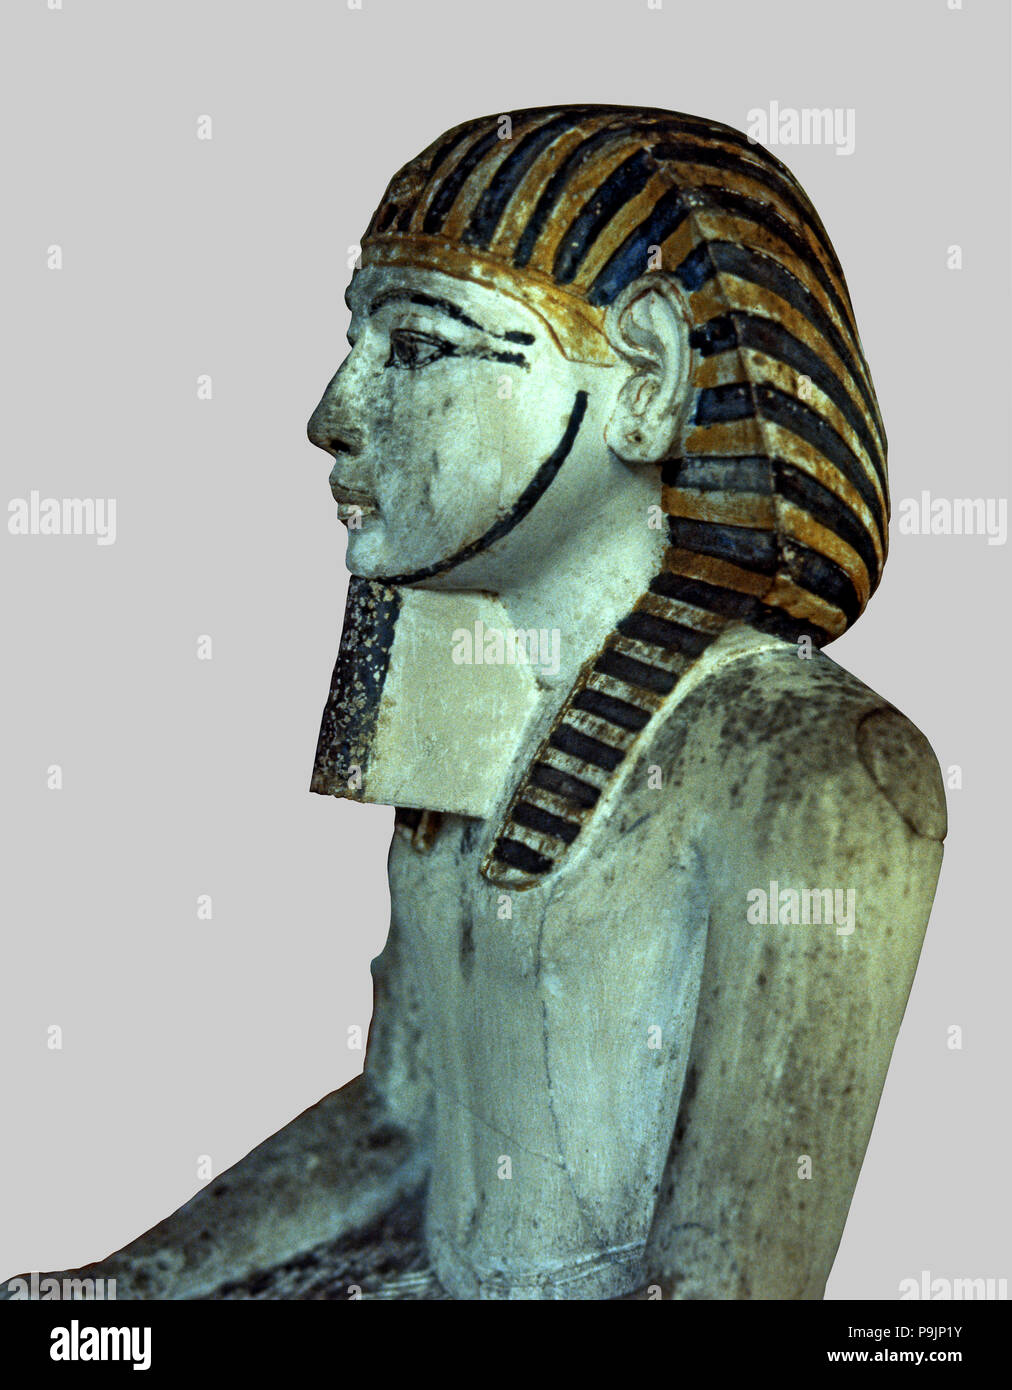 Amenhotep I, dettaglio della parte superiore, statua realizzata in pietra calcarea polychromed. Foto Stock